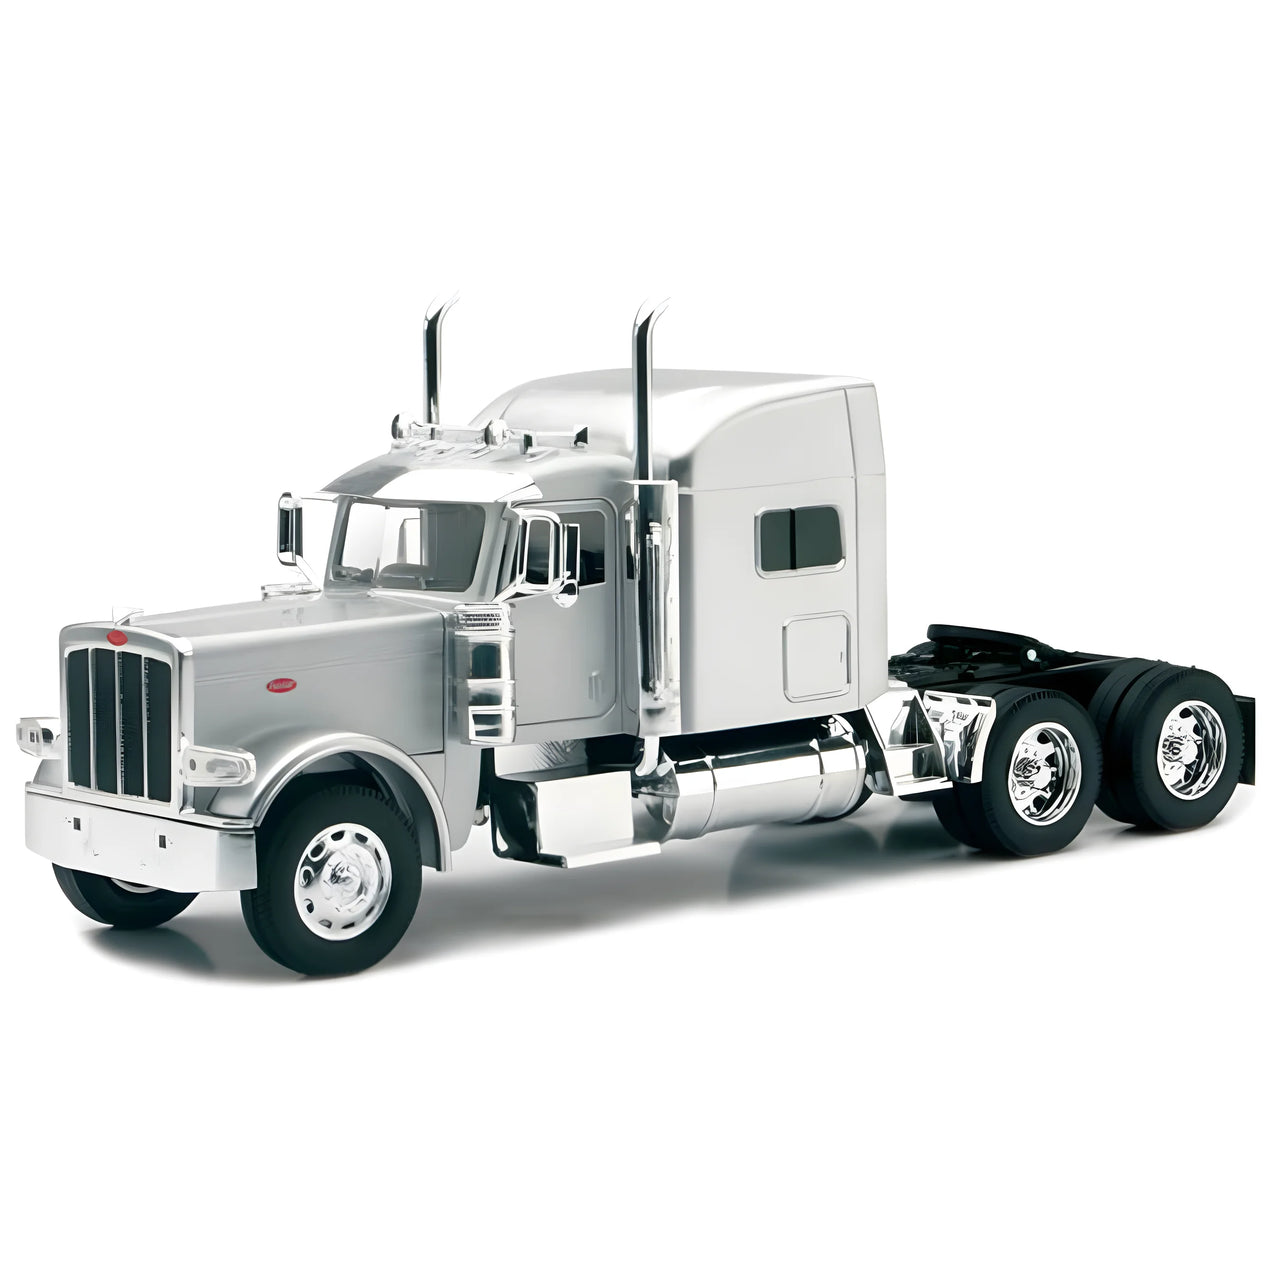 एसएस-52921-एस ट्रैक्टर ट्रक पीटरबिल्ट 389 स्केल 1:32